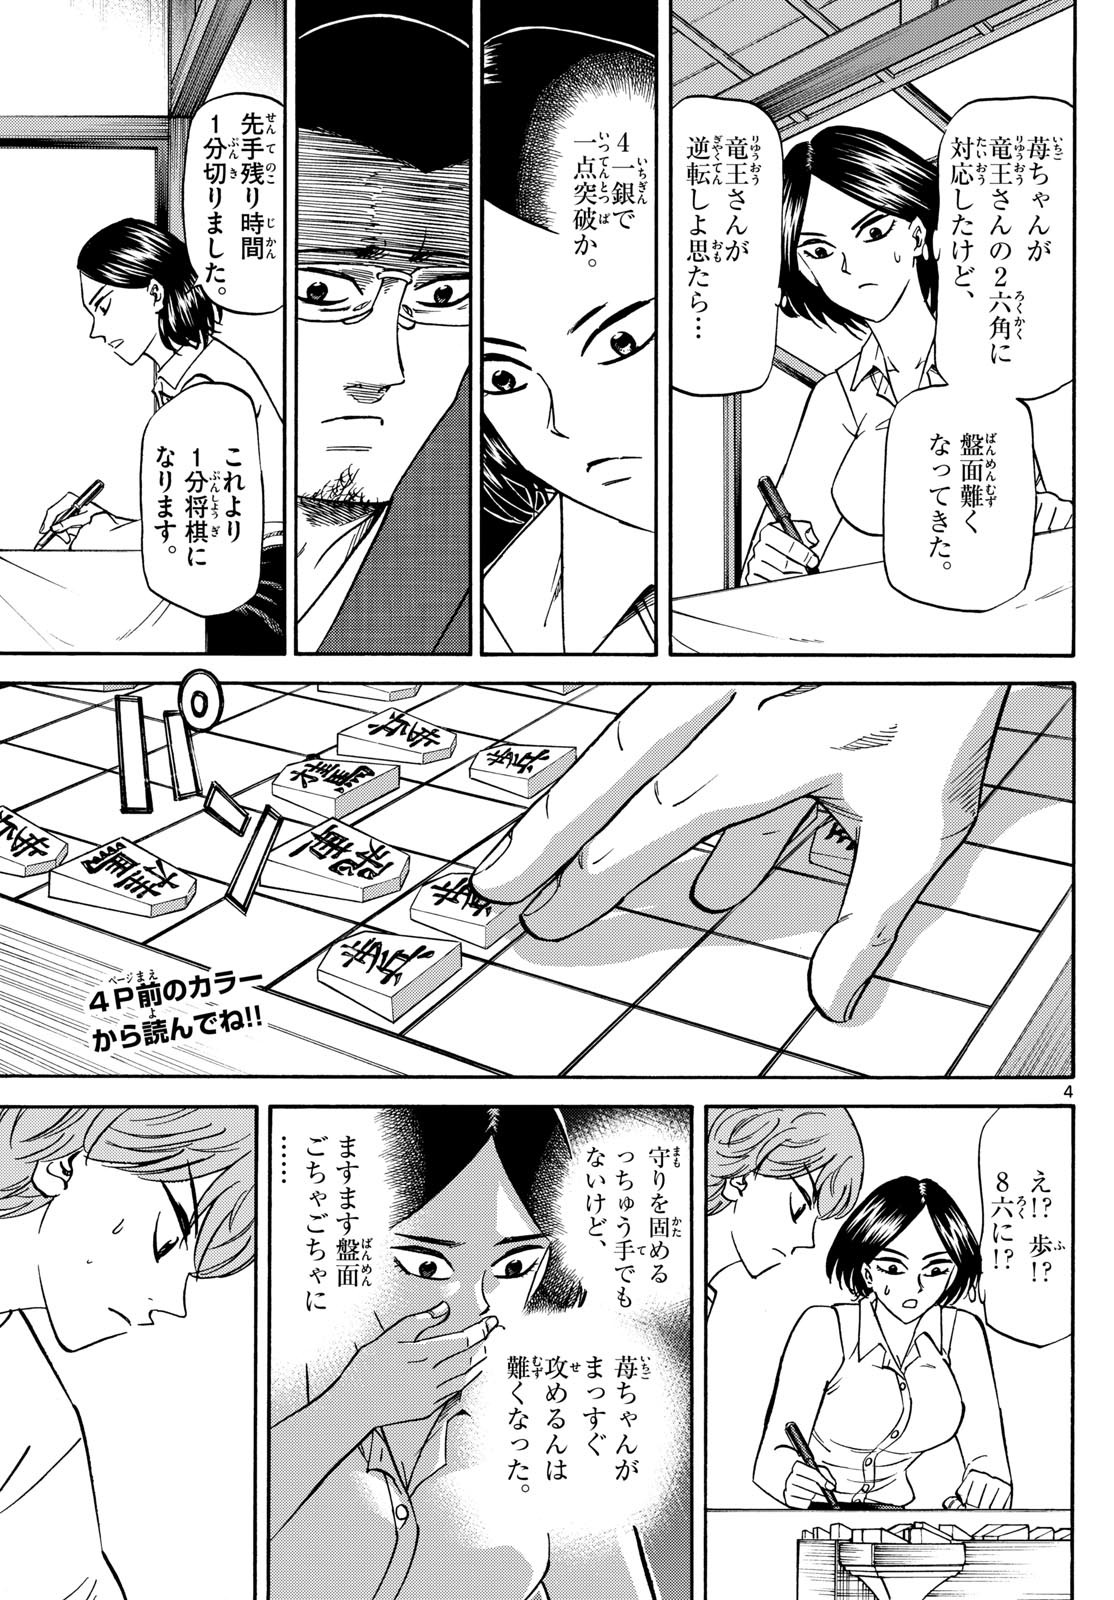 Ryu-to-Ichigo - Chapter 170 - Page 3